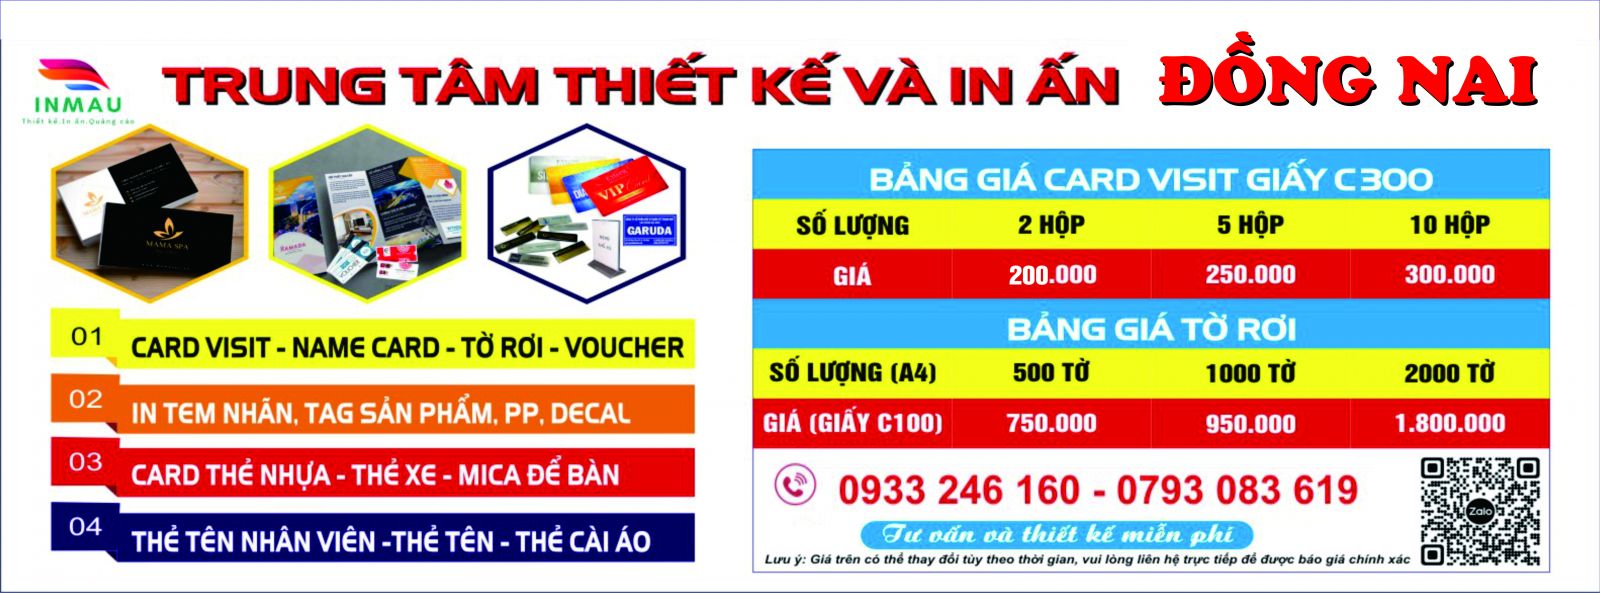 Bảng giá in card visit giá rẻ Long Khánh Đồng Nai